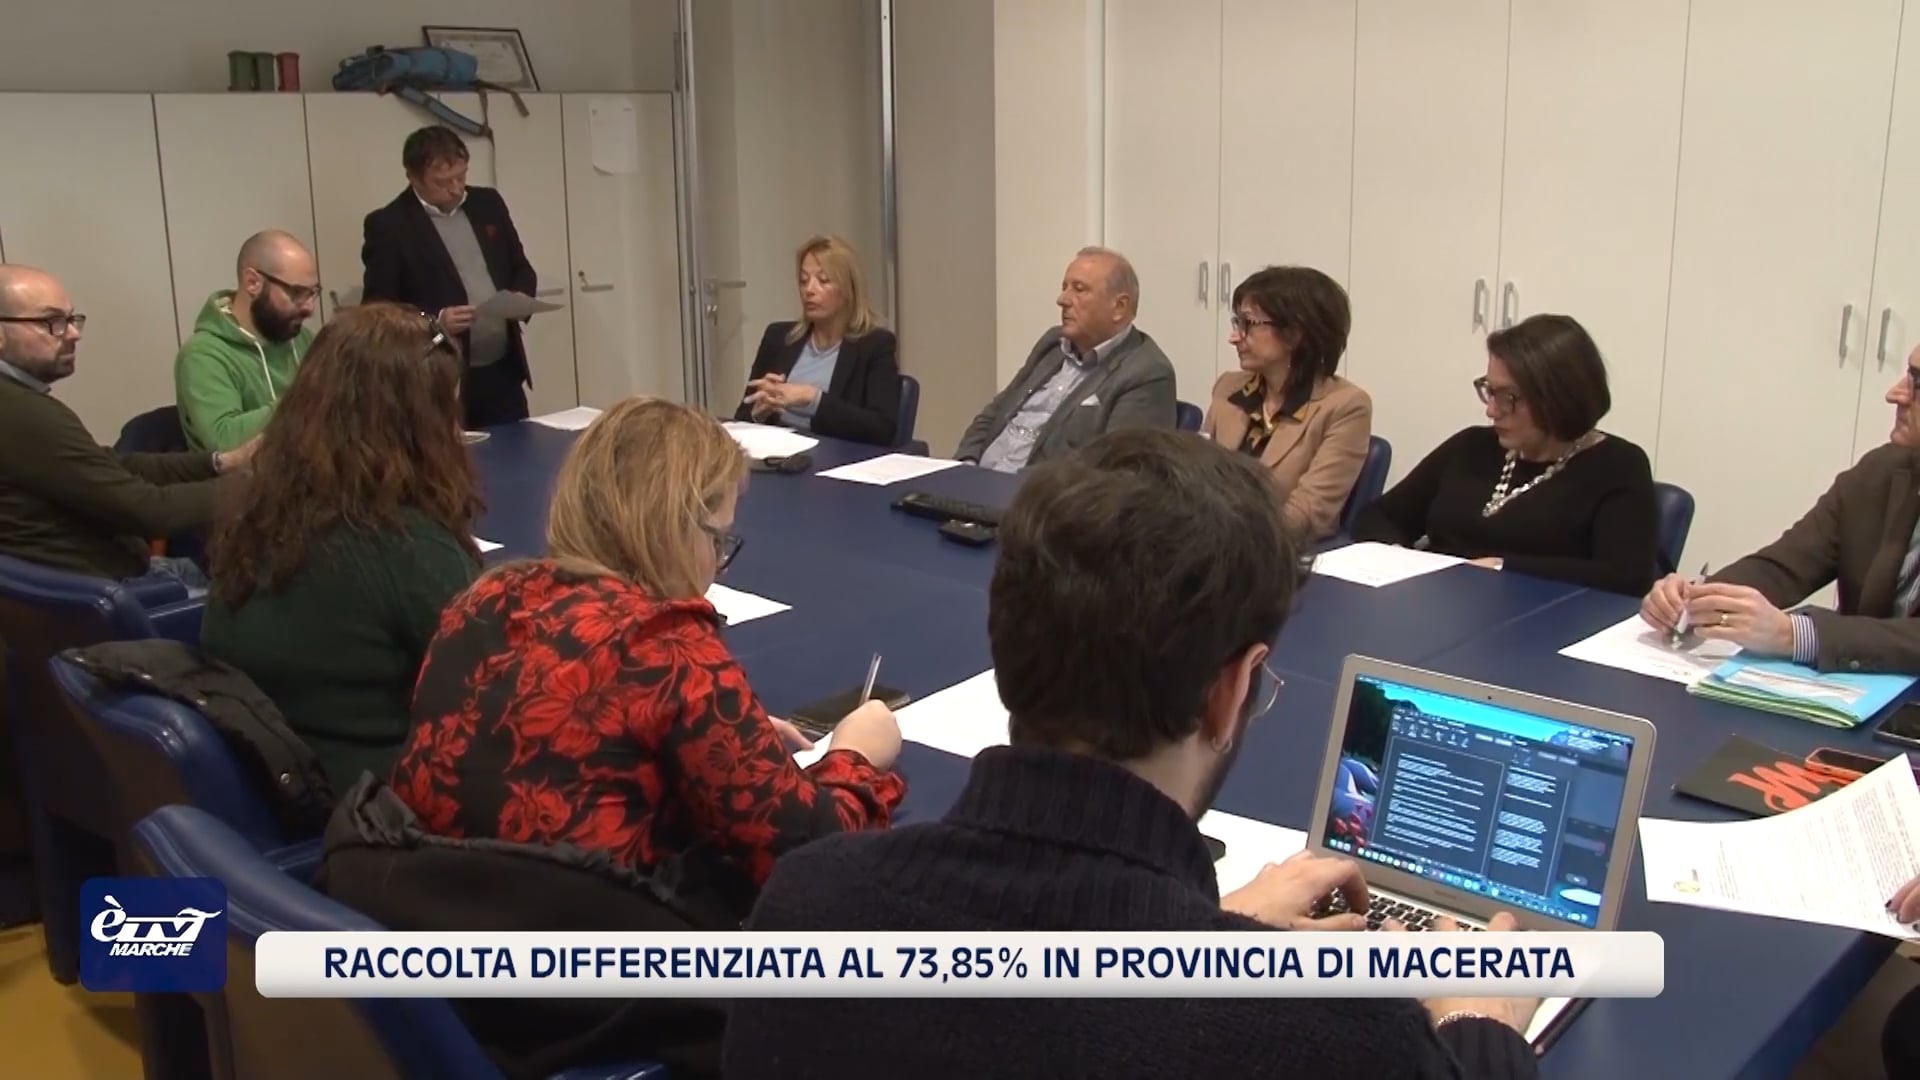 Provincia di Macerata, raccolta differenziata al 73,85% - VIDEO